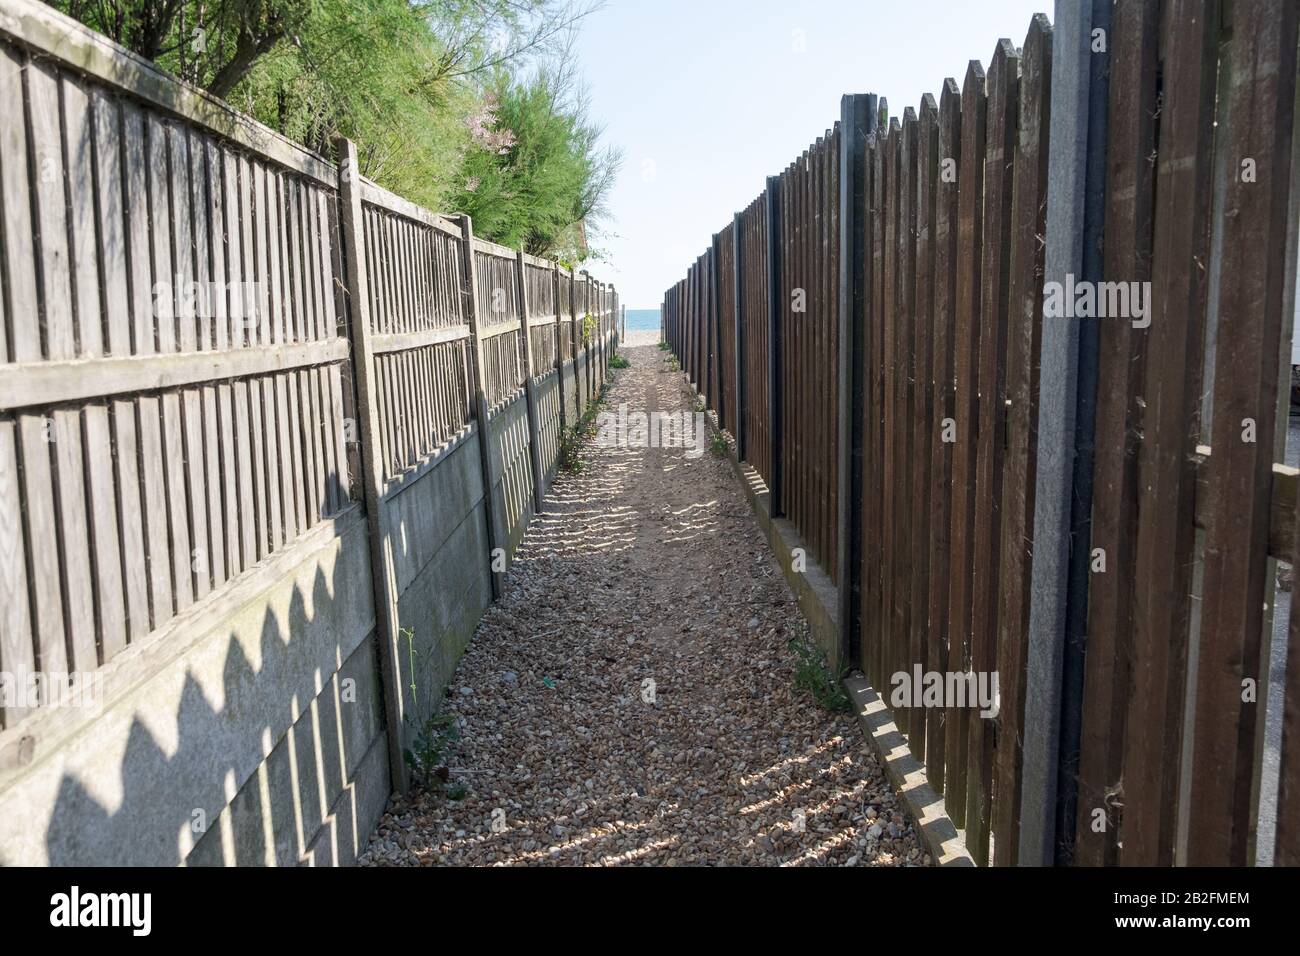 Sentier à West Sands, Selsey, qui mène à l'océan, entouré de clôtures rustiques en bois et d'une voie en galets. West Sussex, Angleterre. Banque D'Images